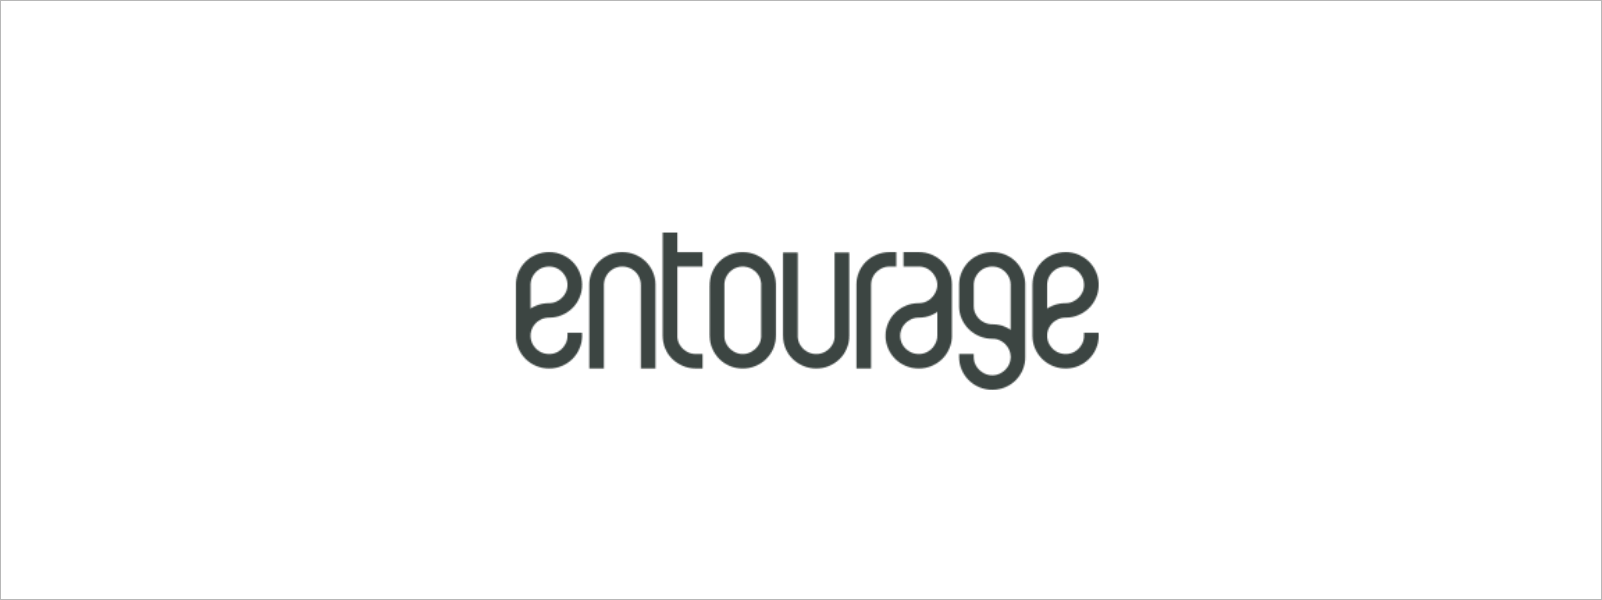 entourage 2030 | entourage marketing & events